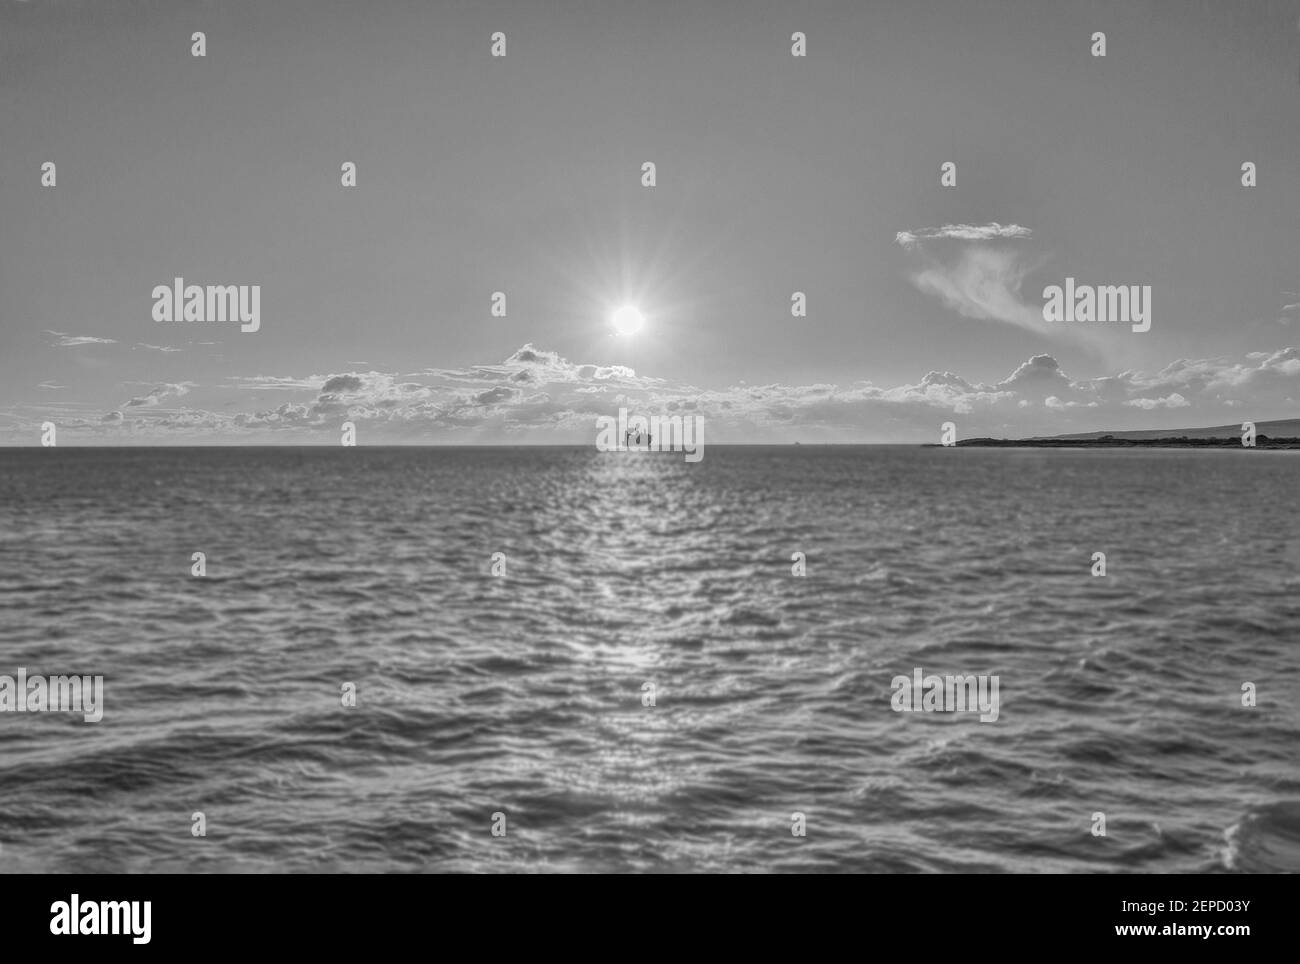 Una imagen de arte de un barco en el horizonte bajo el sol del foco en blanco y negro Foto de stock